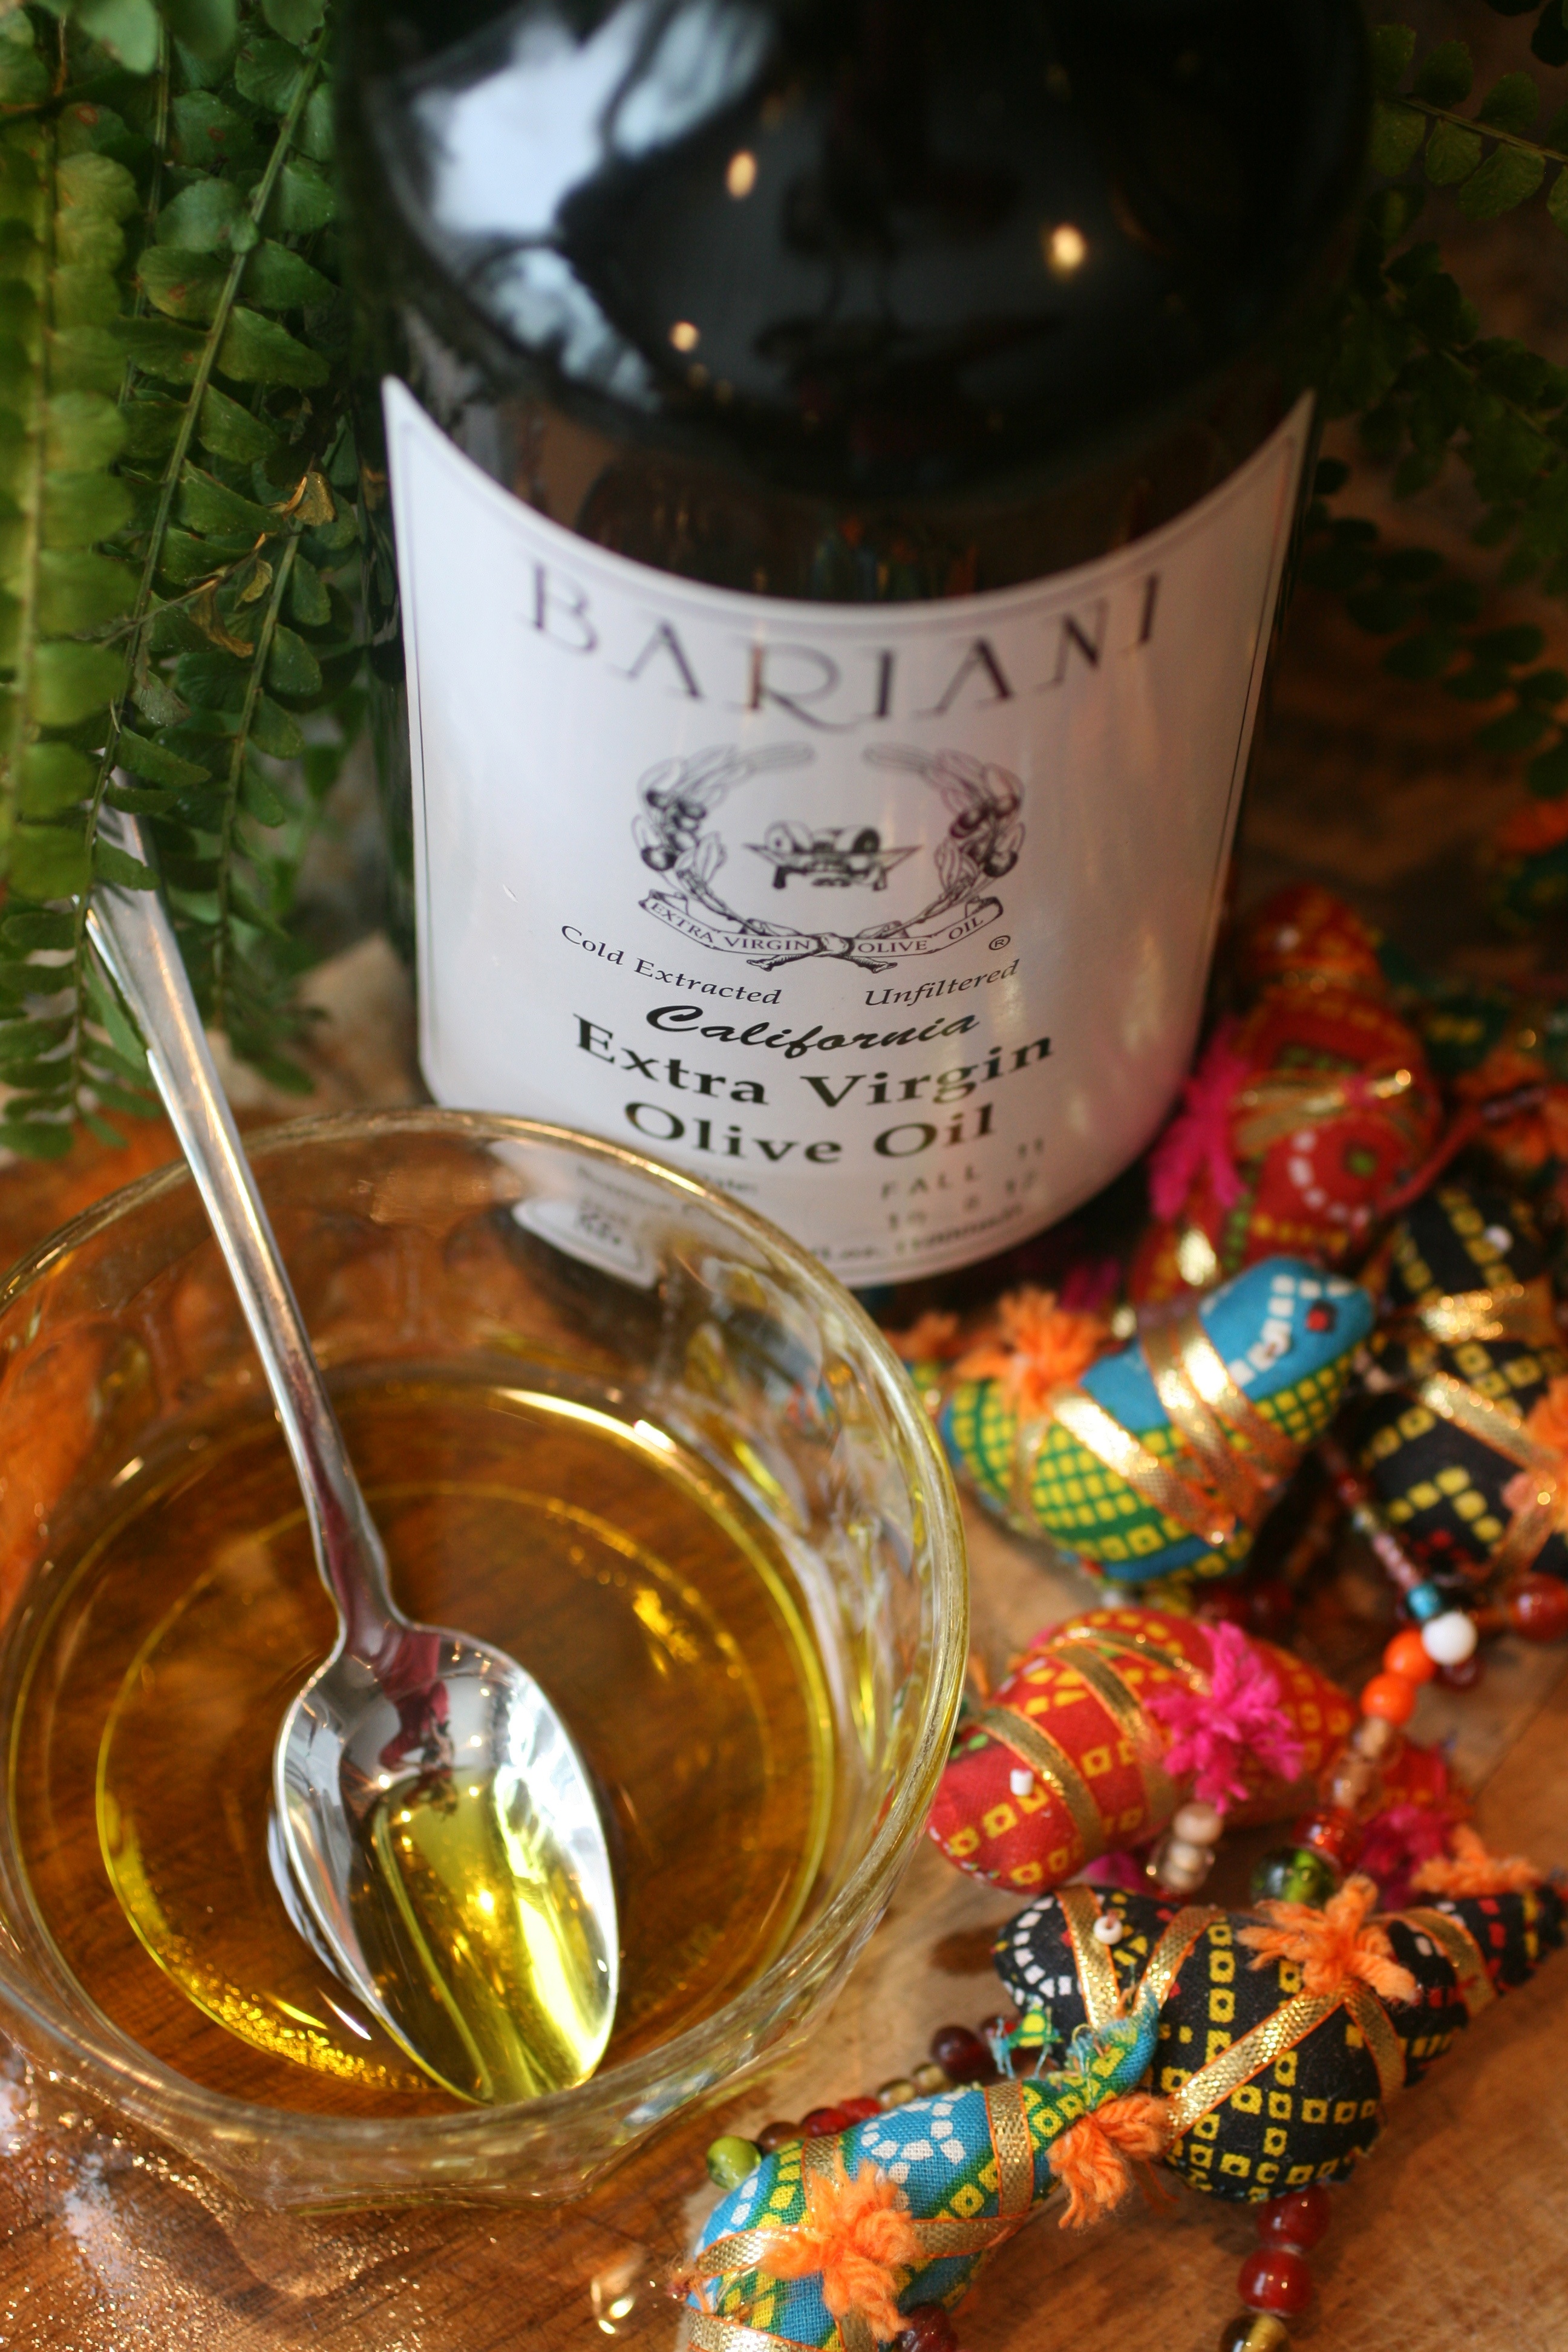 Bariani Olive Oil 2.jpg